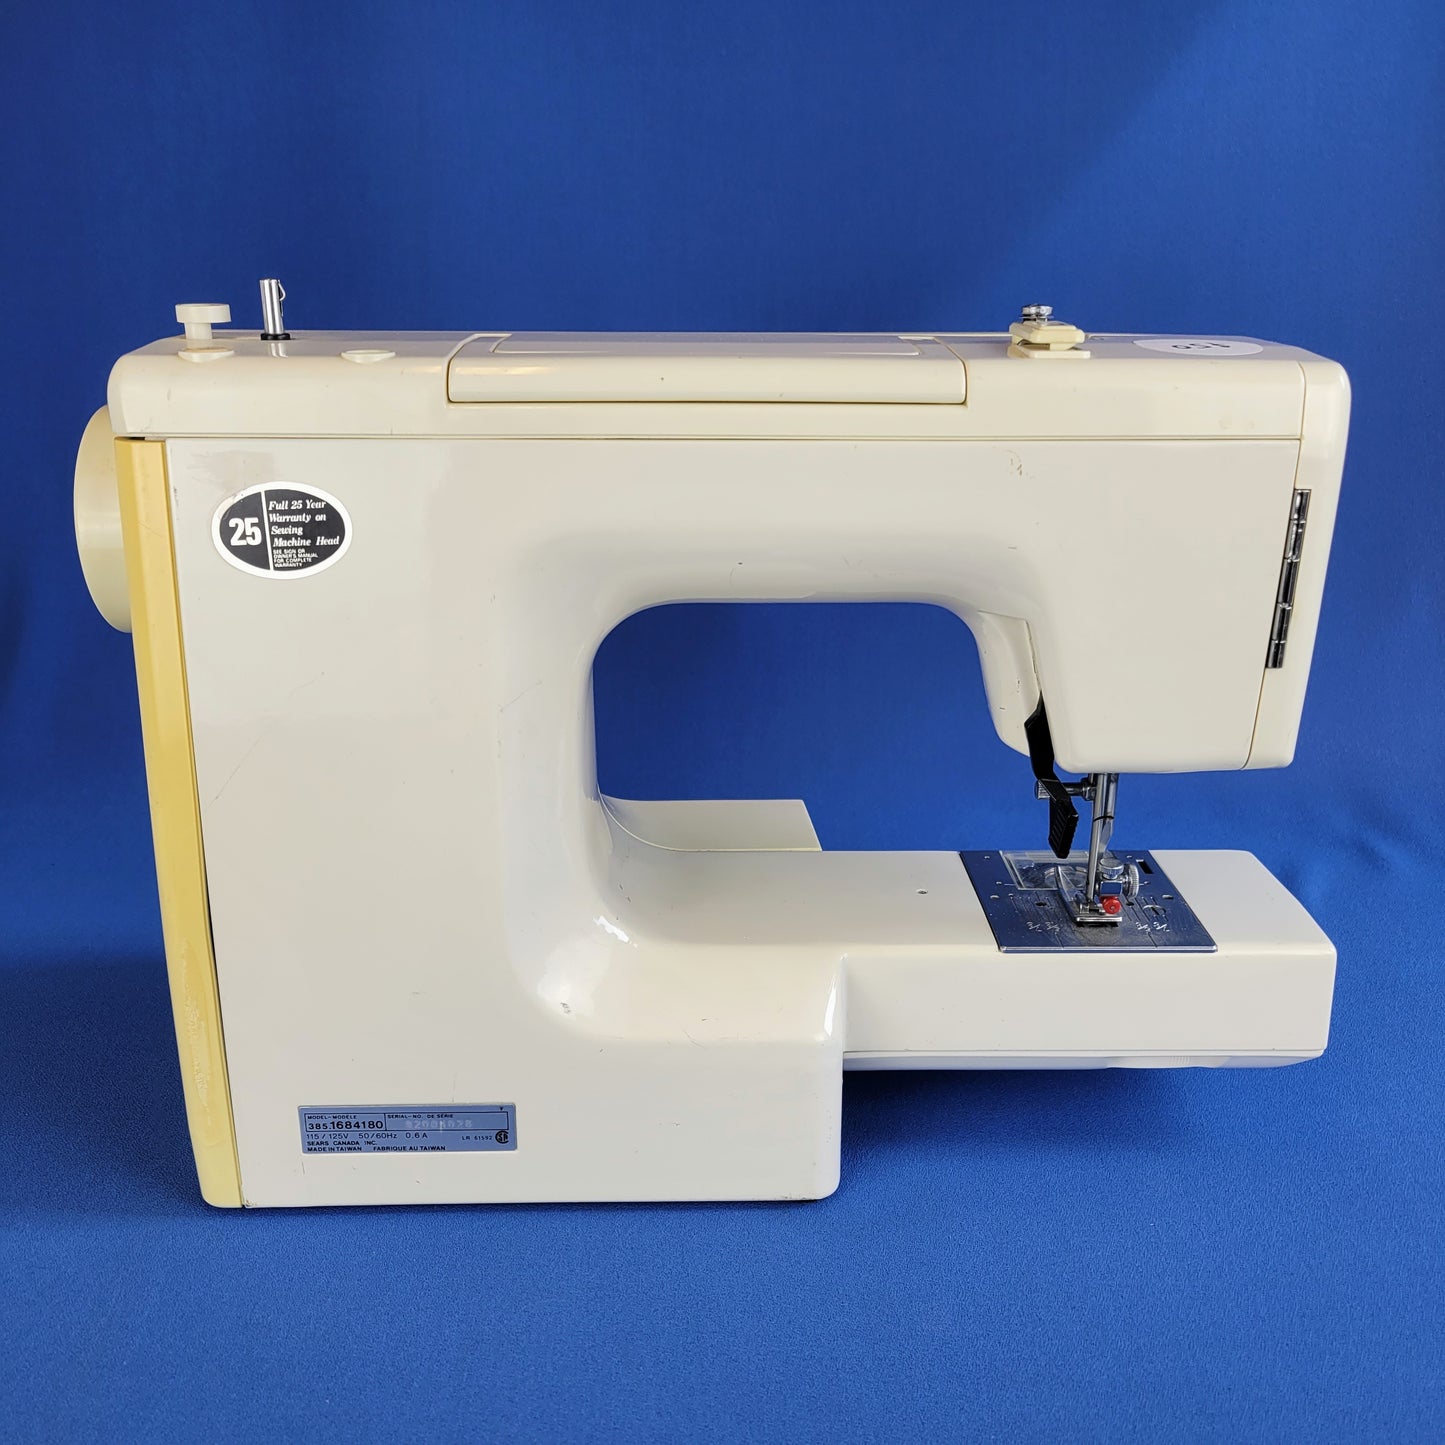 kenmore sewing machine